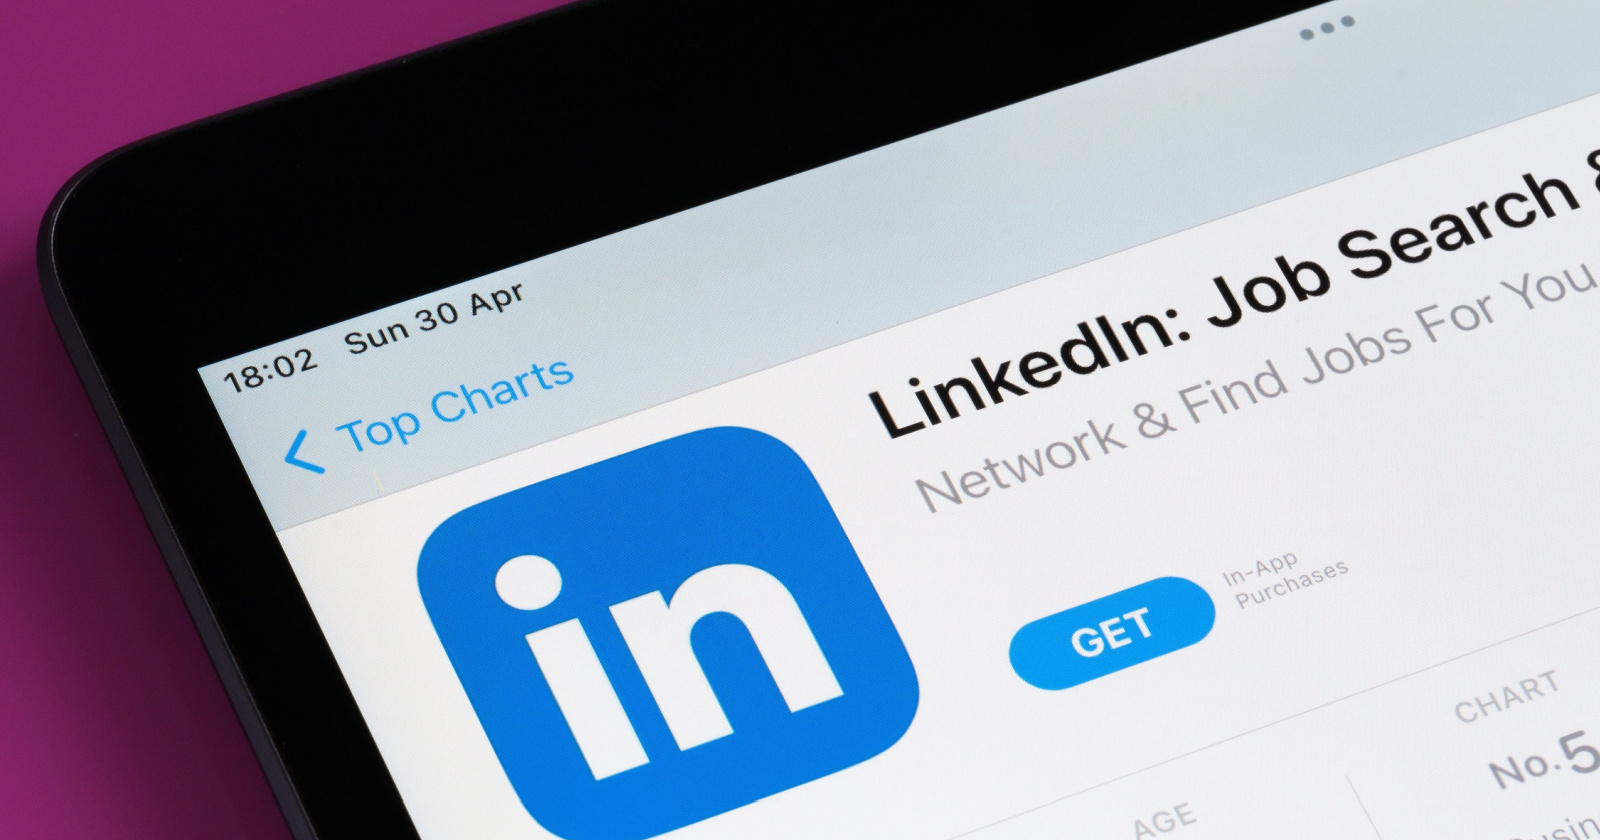 LinkedIn anuncia un cambio en la estrategia global, lo que resulta en recortes de empleos